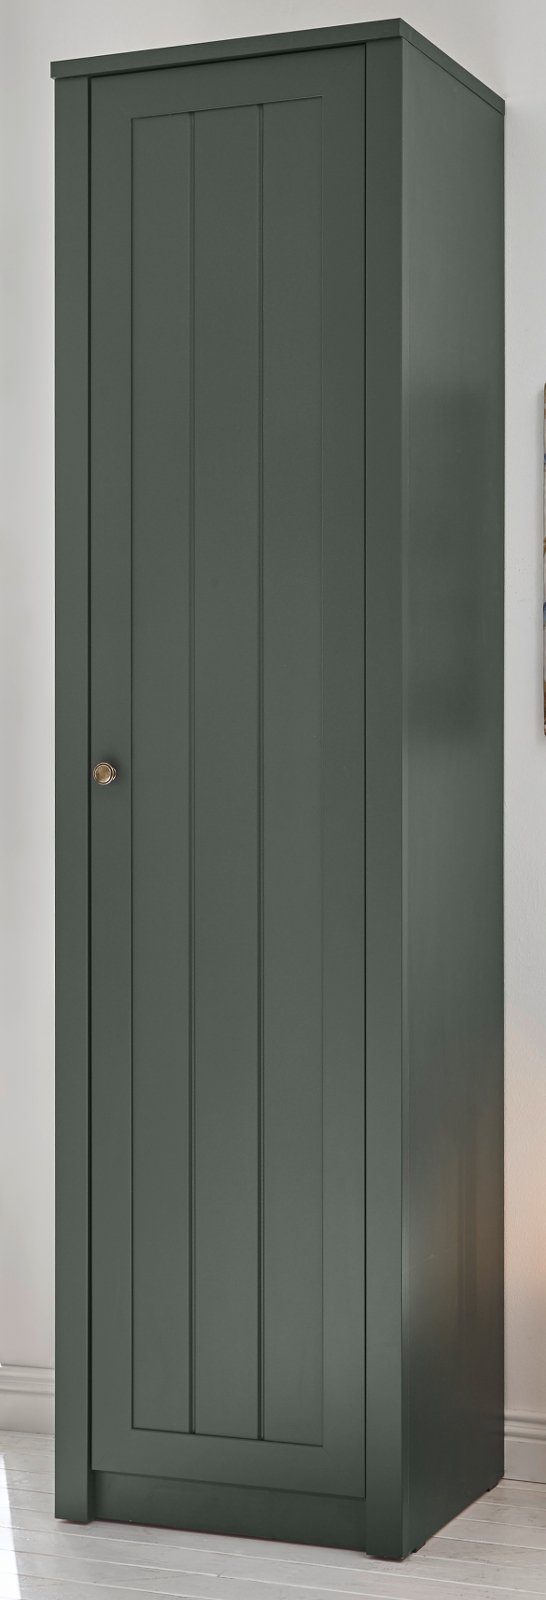 IMV Schuhschrank Forres (Flurschrank in Landhaus grün, 50 x 197 cm) mit viel Stauraum